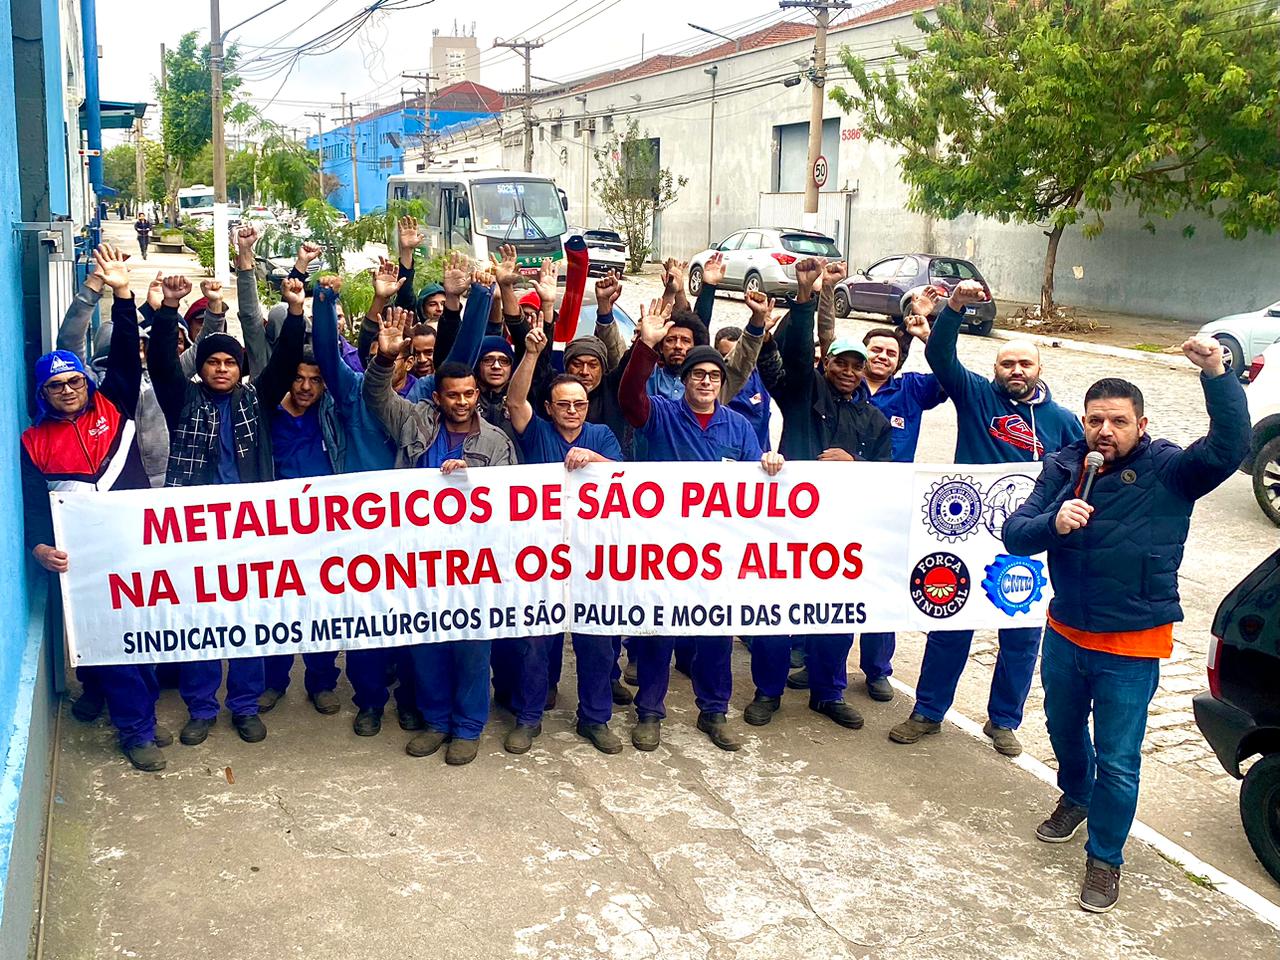 Metalúrgicos de São Paulo nos locais de trabalho contra juros altos